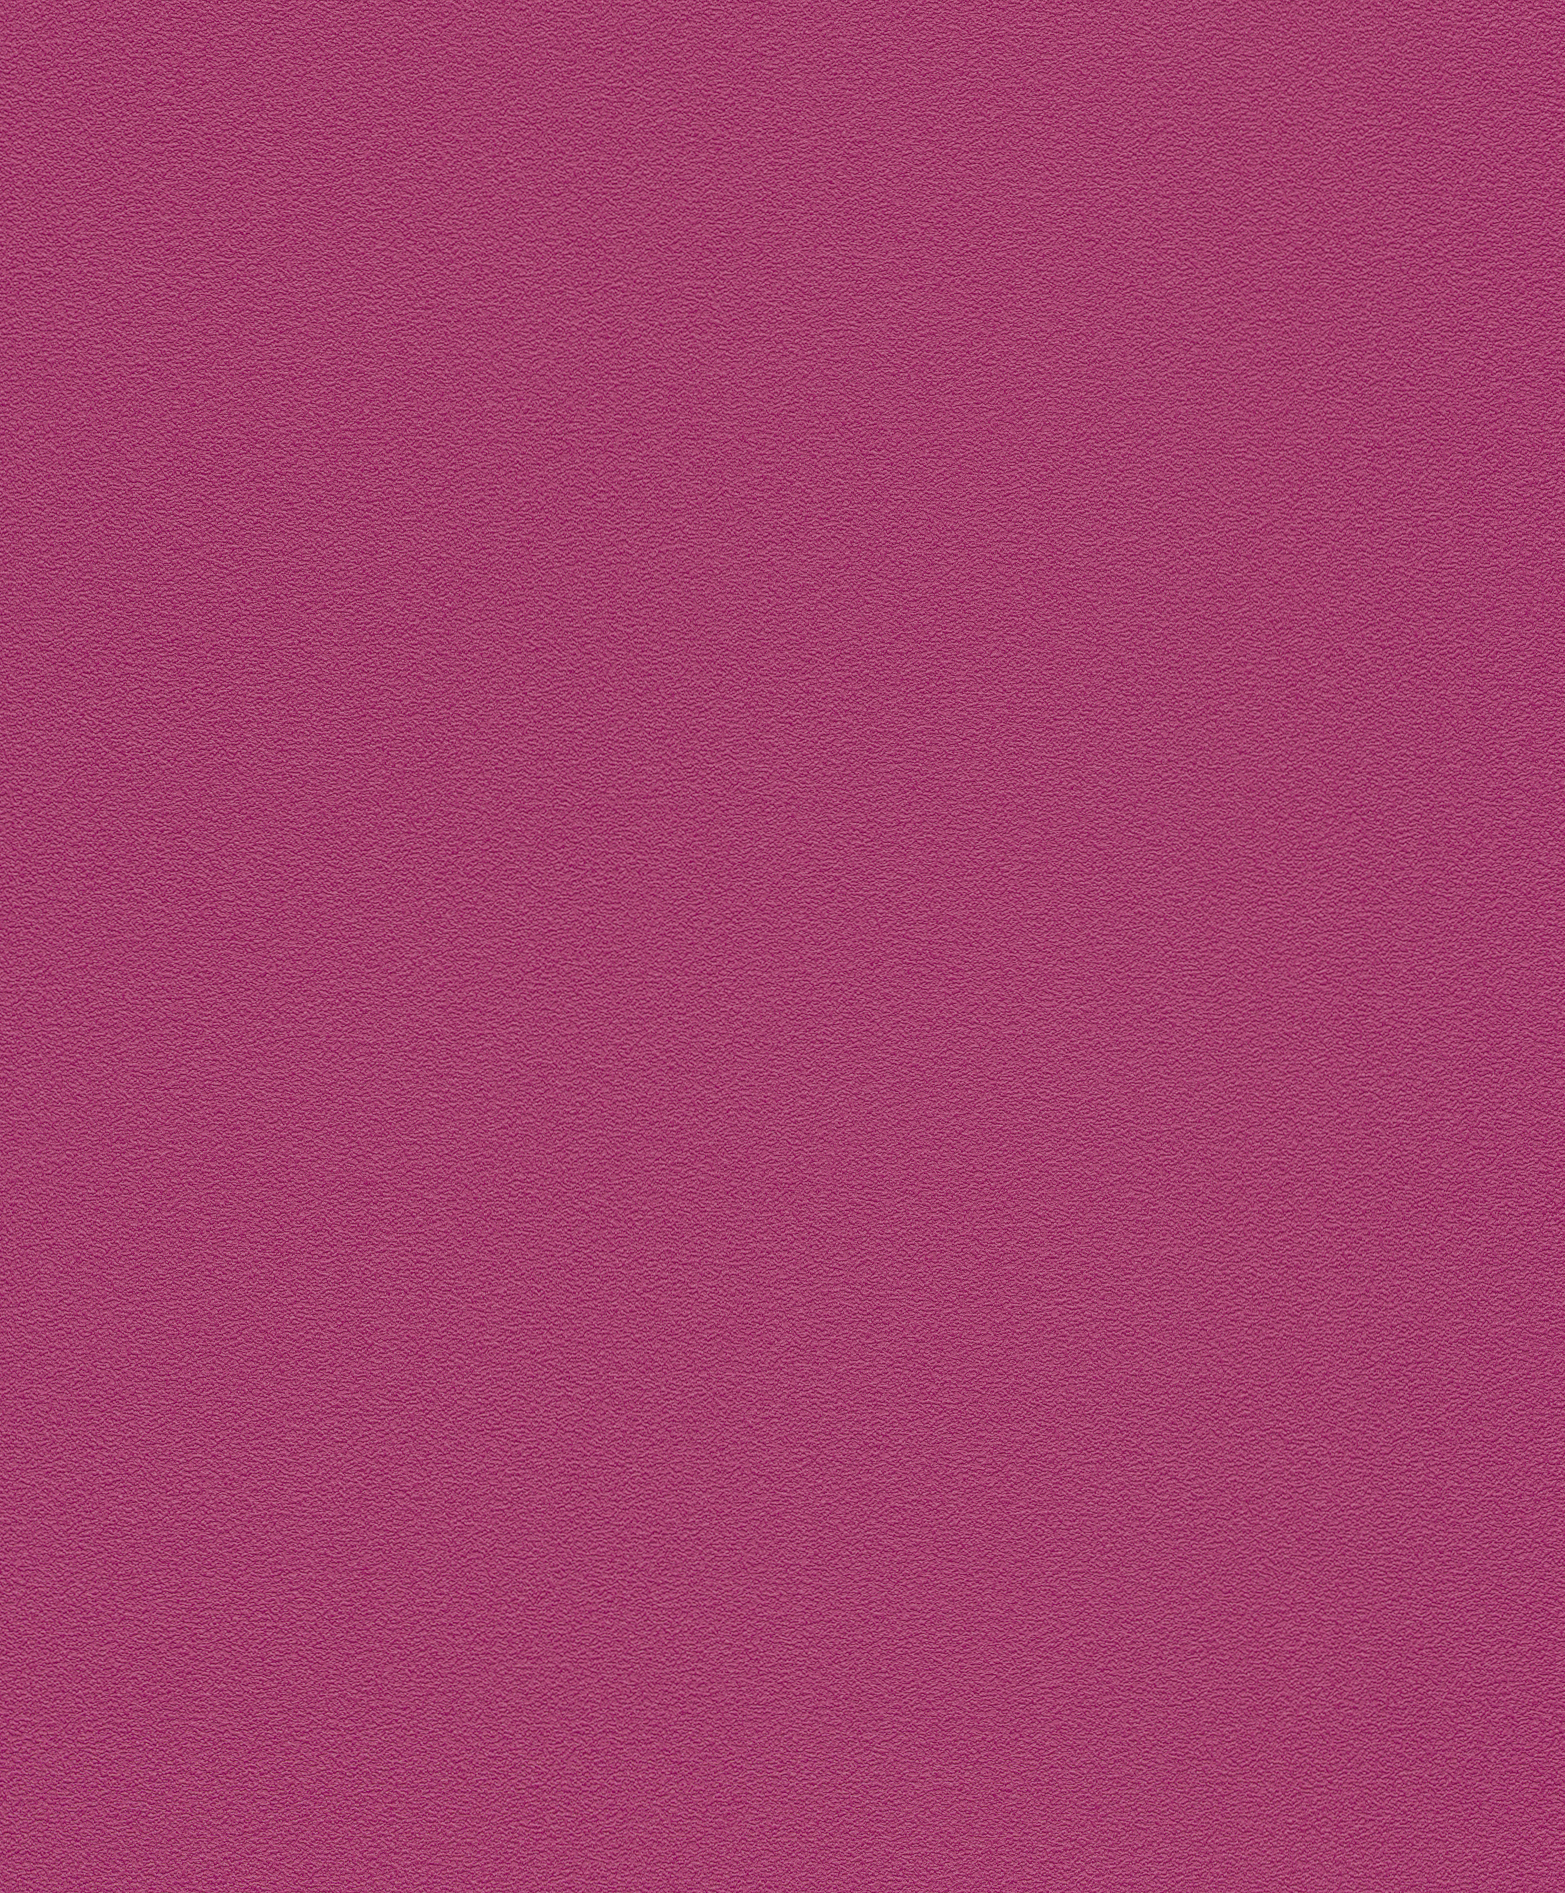 Egyszínű pink tapéta